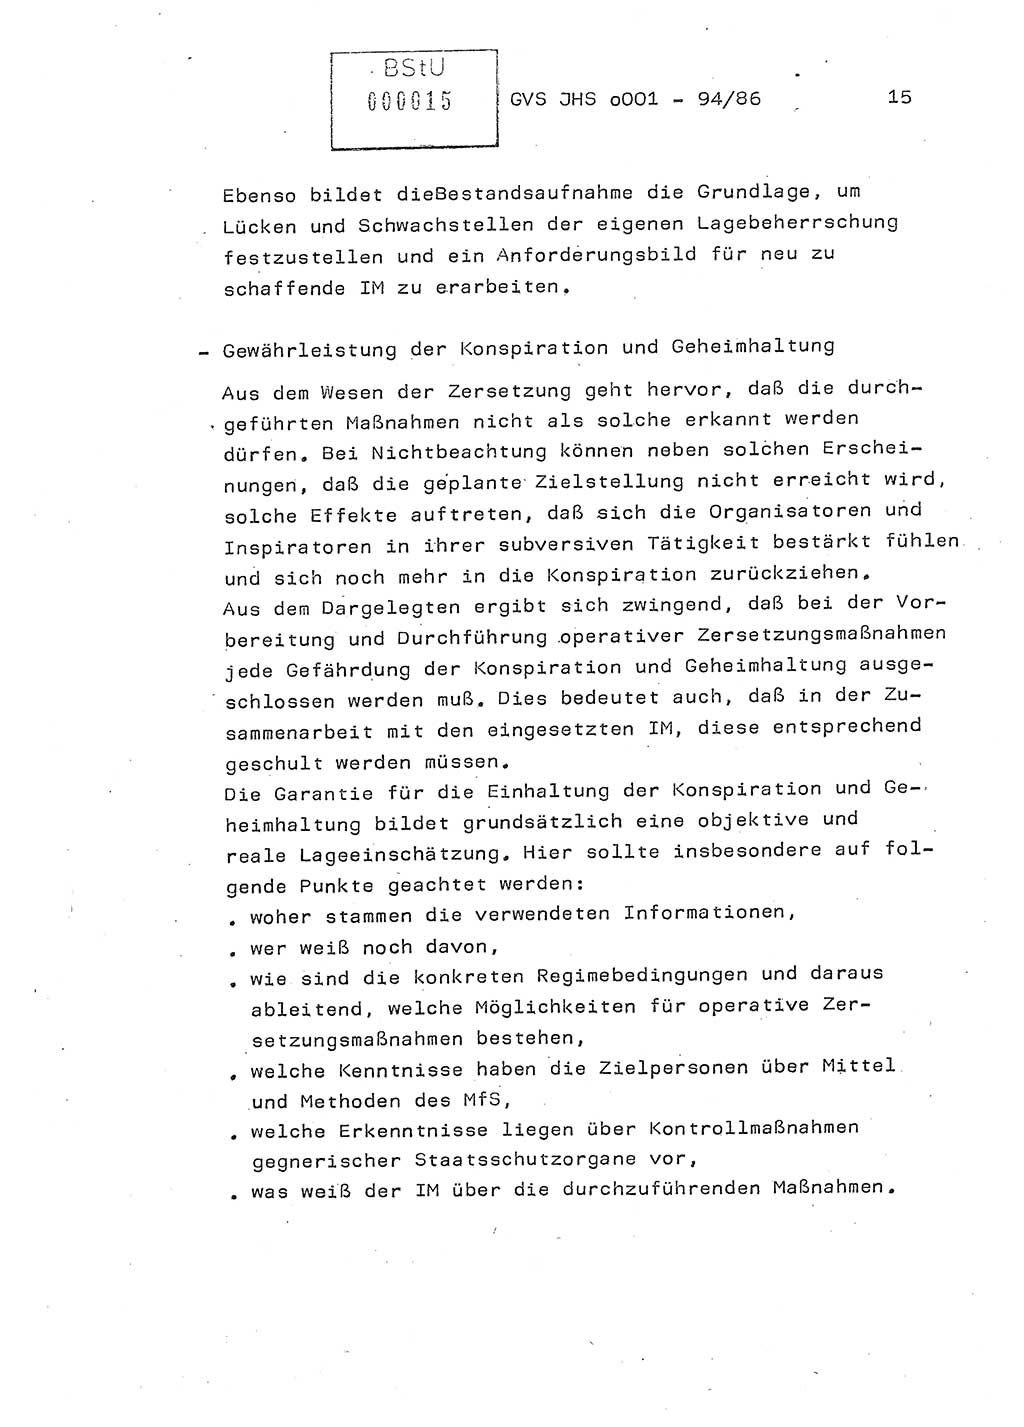 Diplomarbeit Oberleutnant Volkmar Pechmann (HA ⅩⅩ/5), Ministerium für Staatssicherheit (MfS) [Deutsche Demokratische Republik (DDR)], Juristische Hochschule (JHS), Geheime Verschlußsache (GVS) o001-94/86, Potsdam 1986, Blatt 15 (Dipl.-Arb. MfS DDR JHS GVS o001-94/86 1986, Bl. 15)